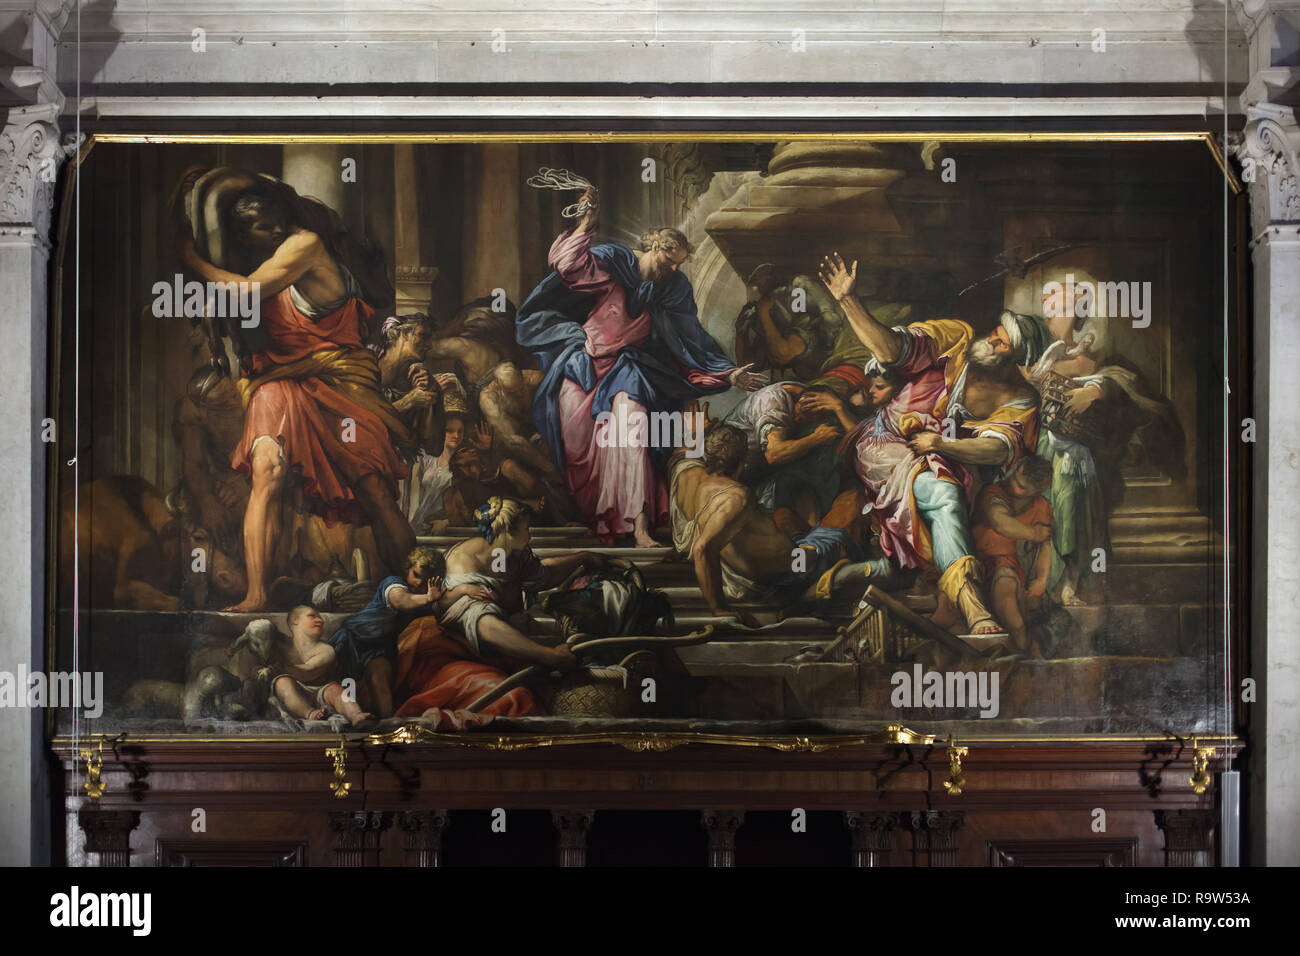 Peinture 'Christ expulse les marchands du Temple' par peintre baroque italien Giovanni Antonio Fumiani (1678) à l'église de Saint Roch (Chiesa di San Rocco) à Venise, Italie. Banque D'Images